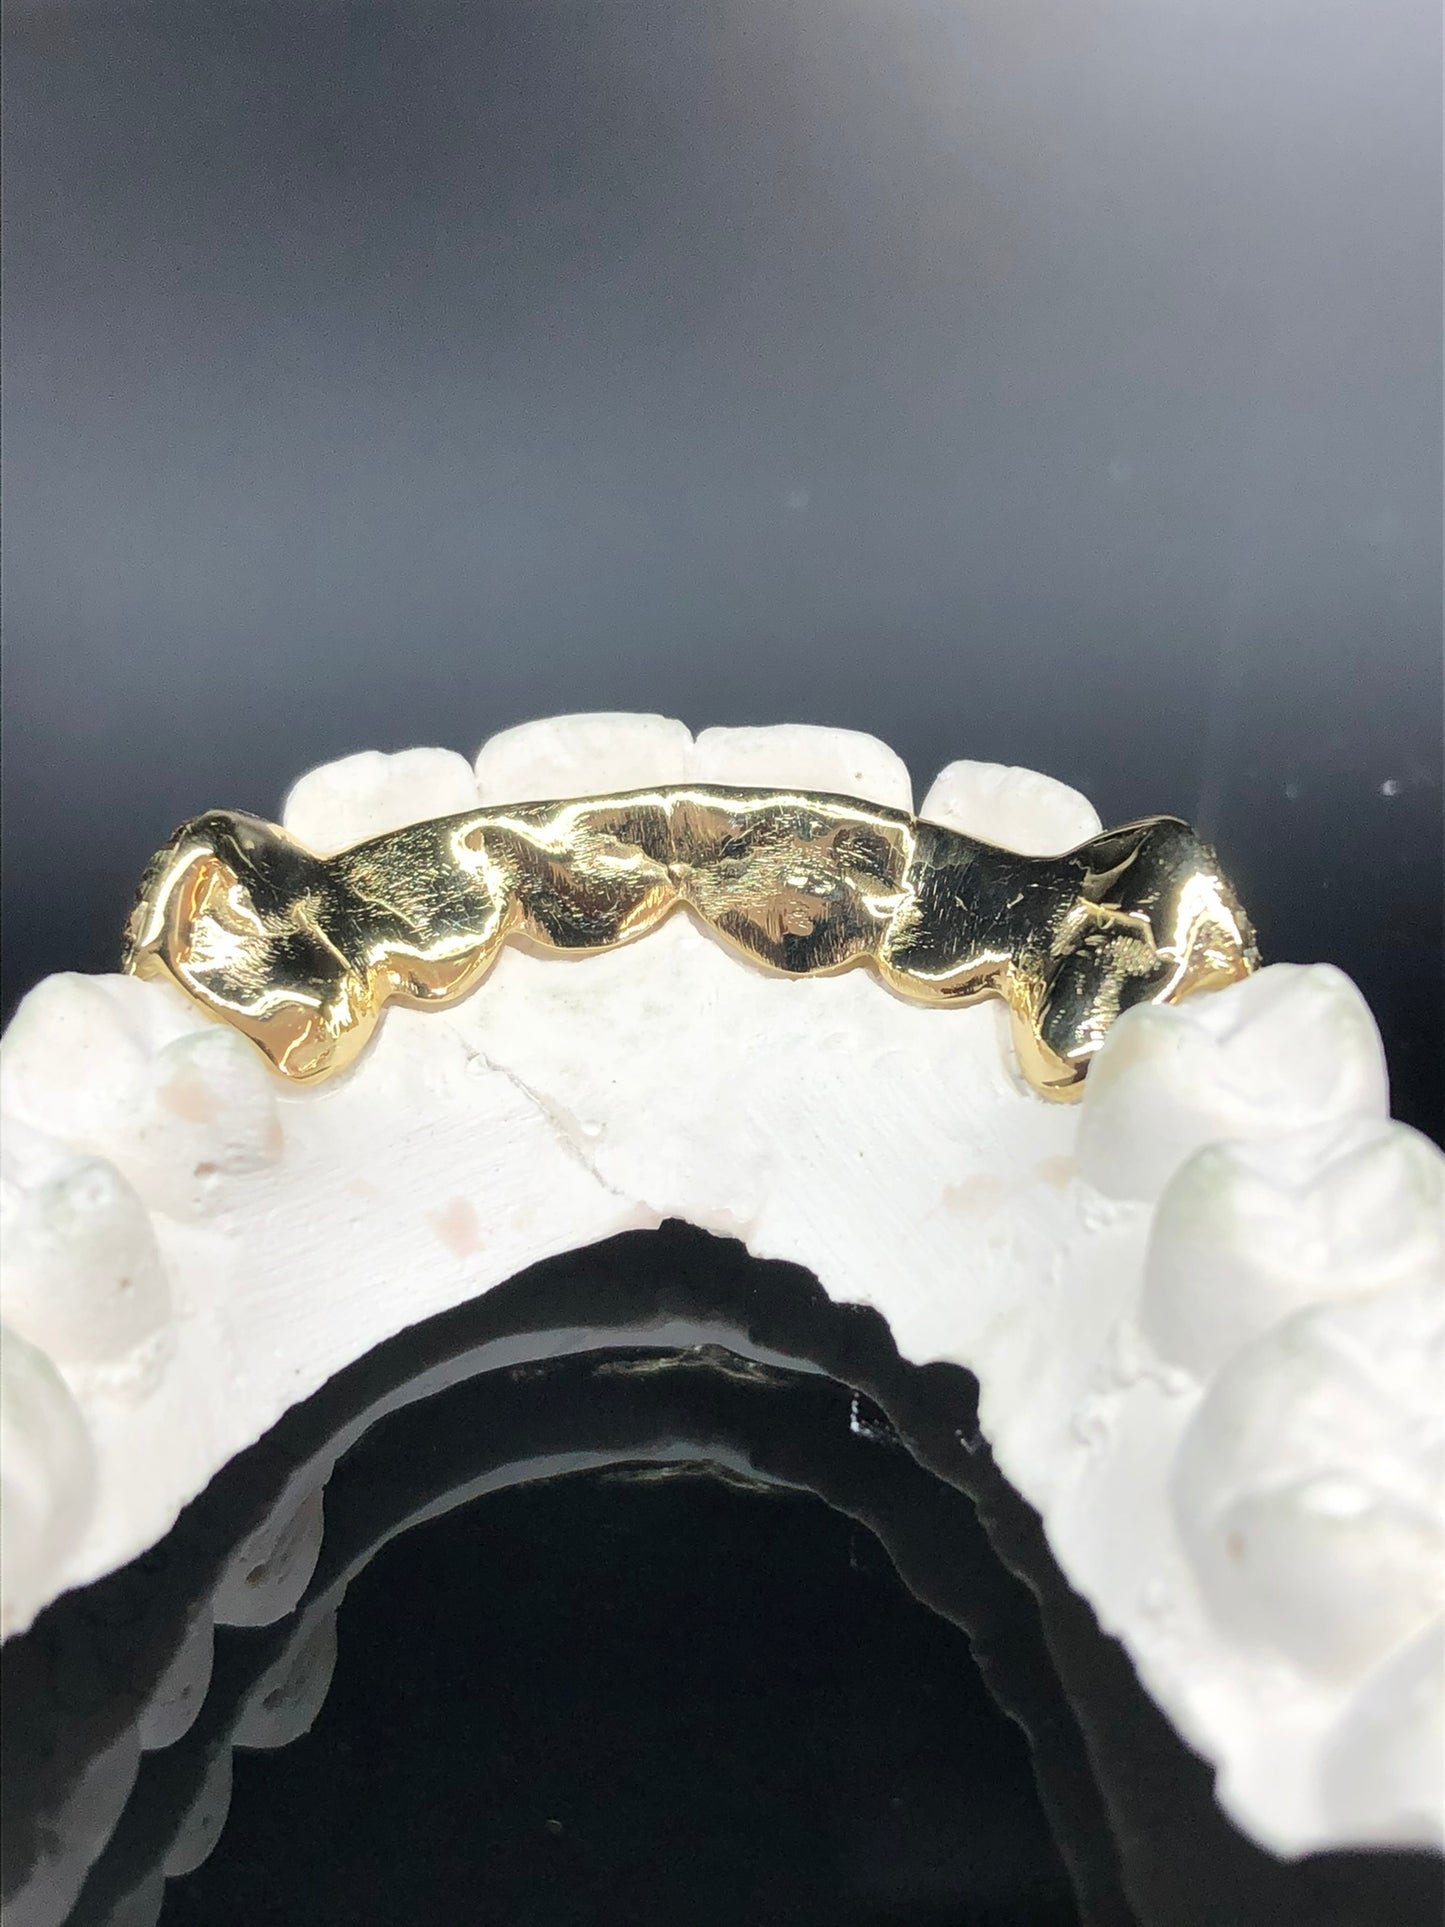 2 Teeth Gold Grillz - 2 Bottom Fangs w/ Back Bridge